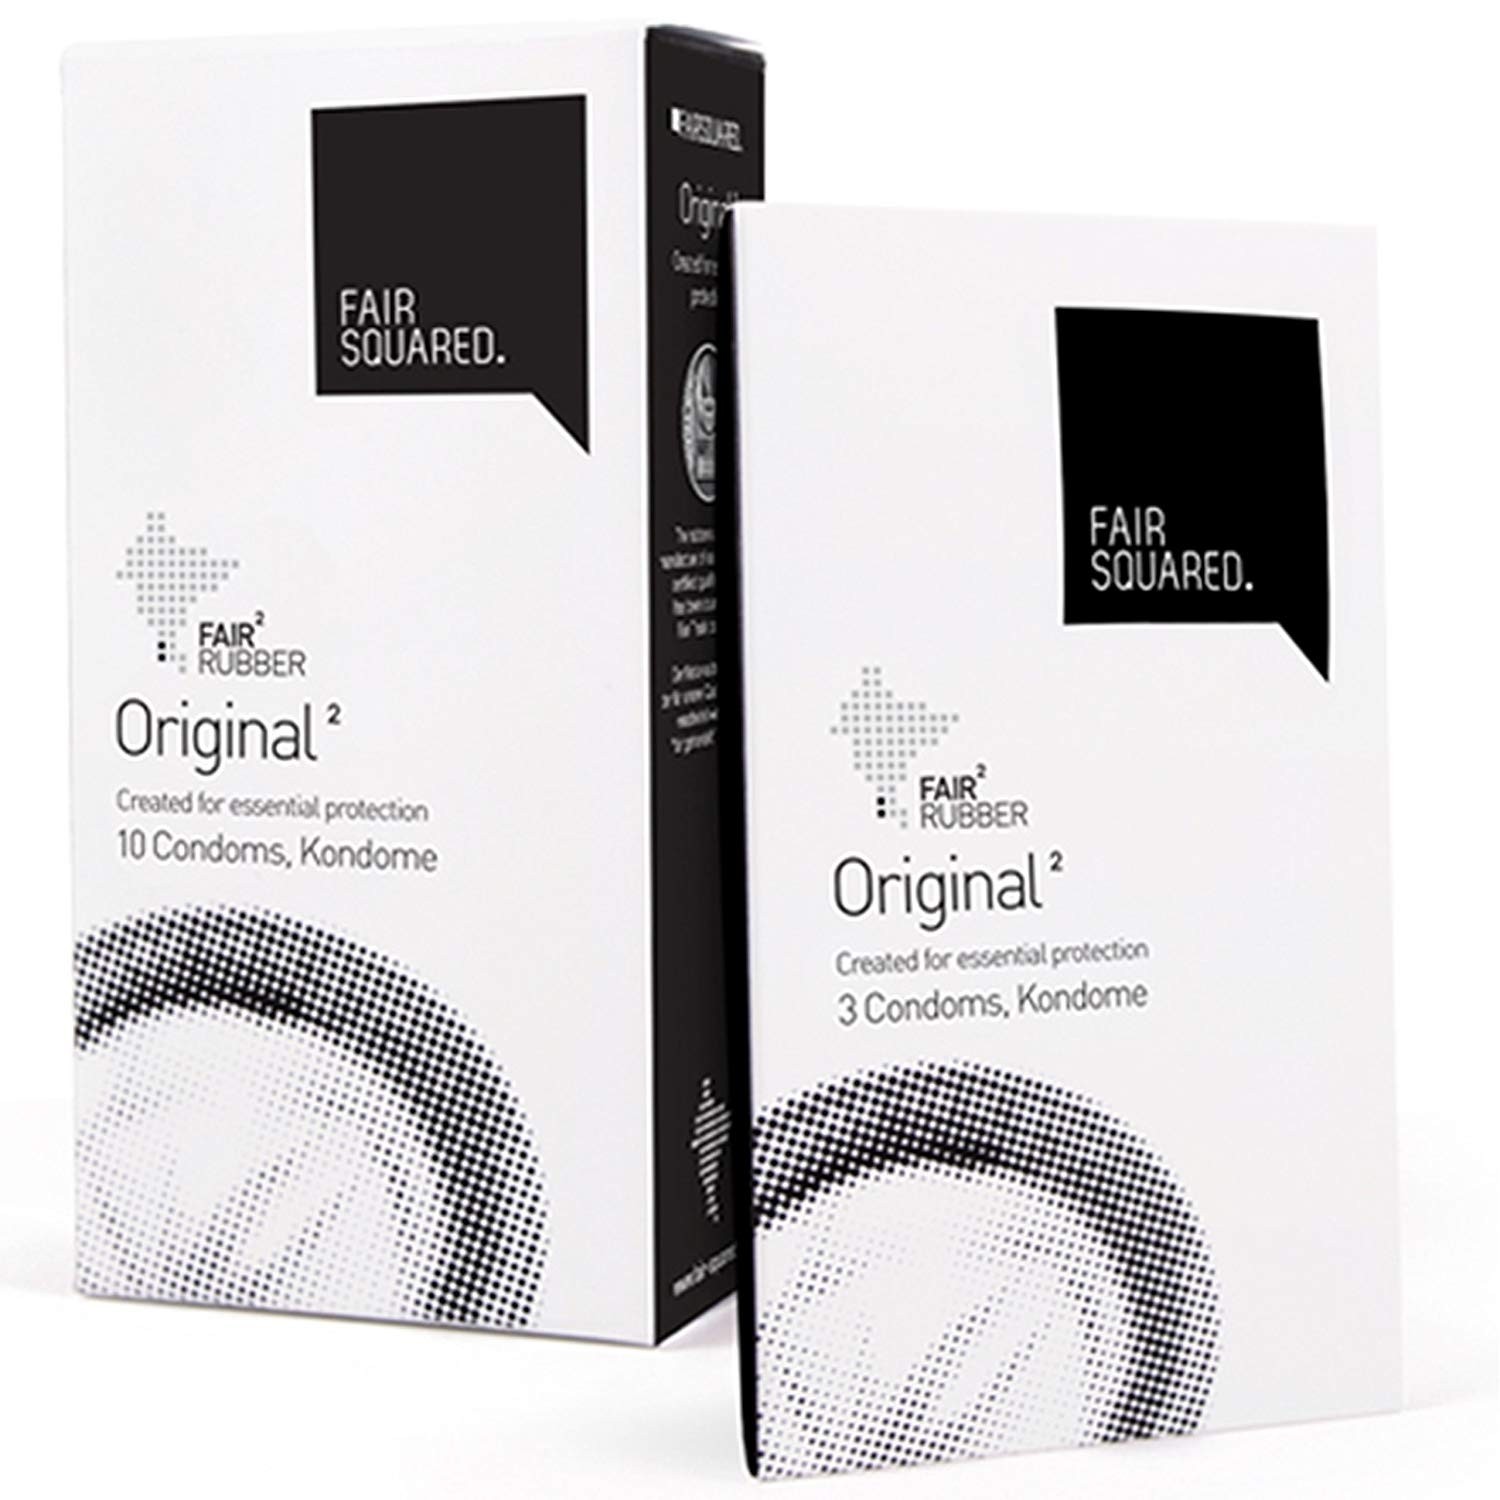 Fair Squared Original Condoms